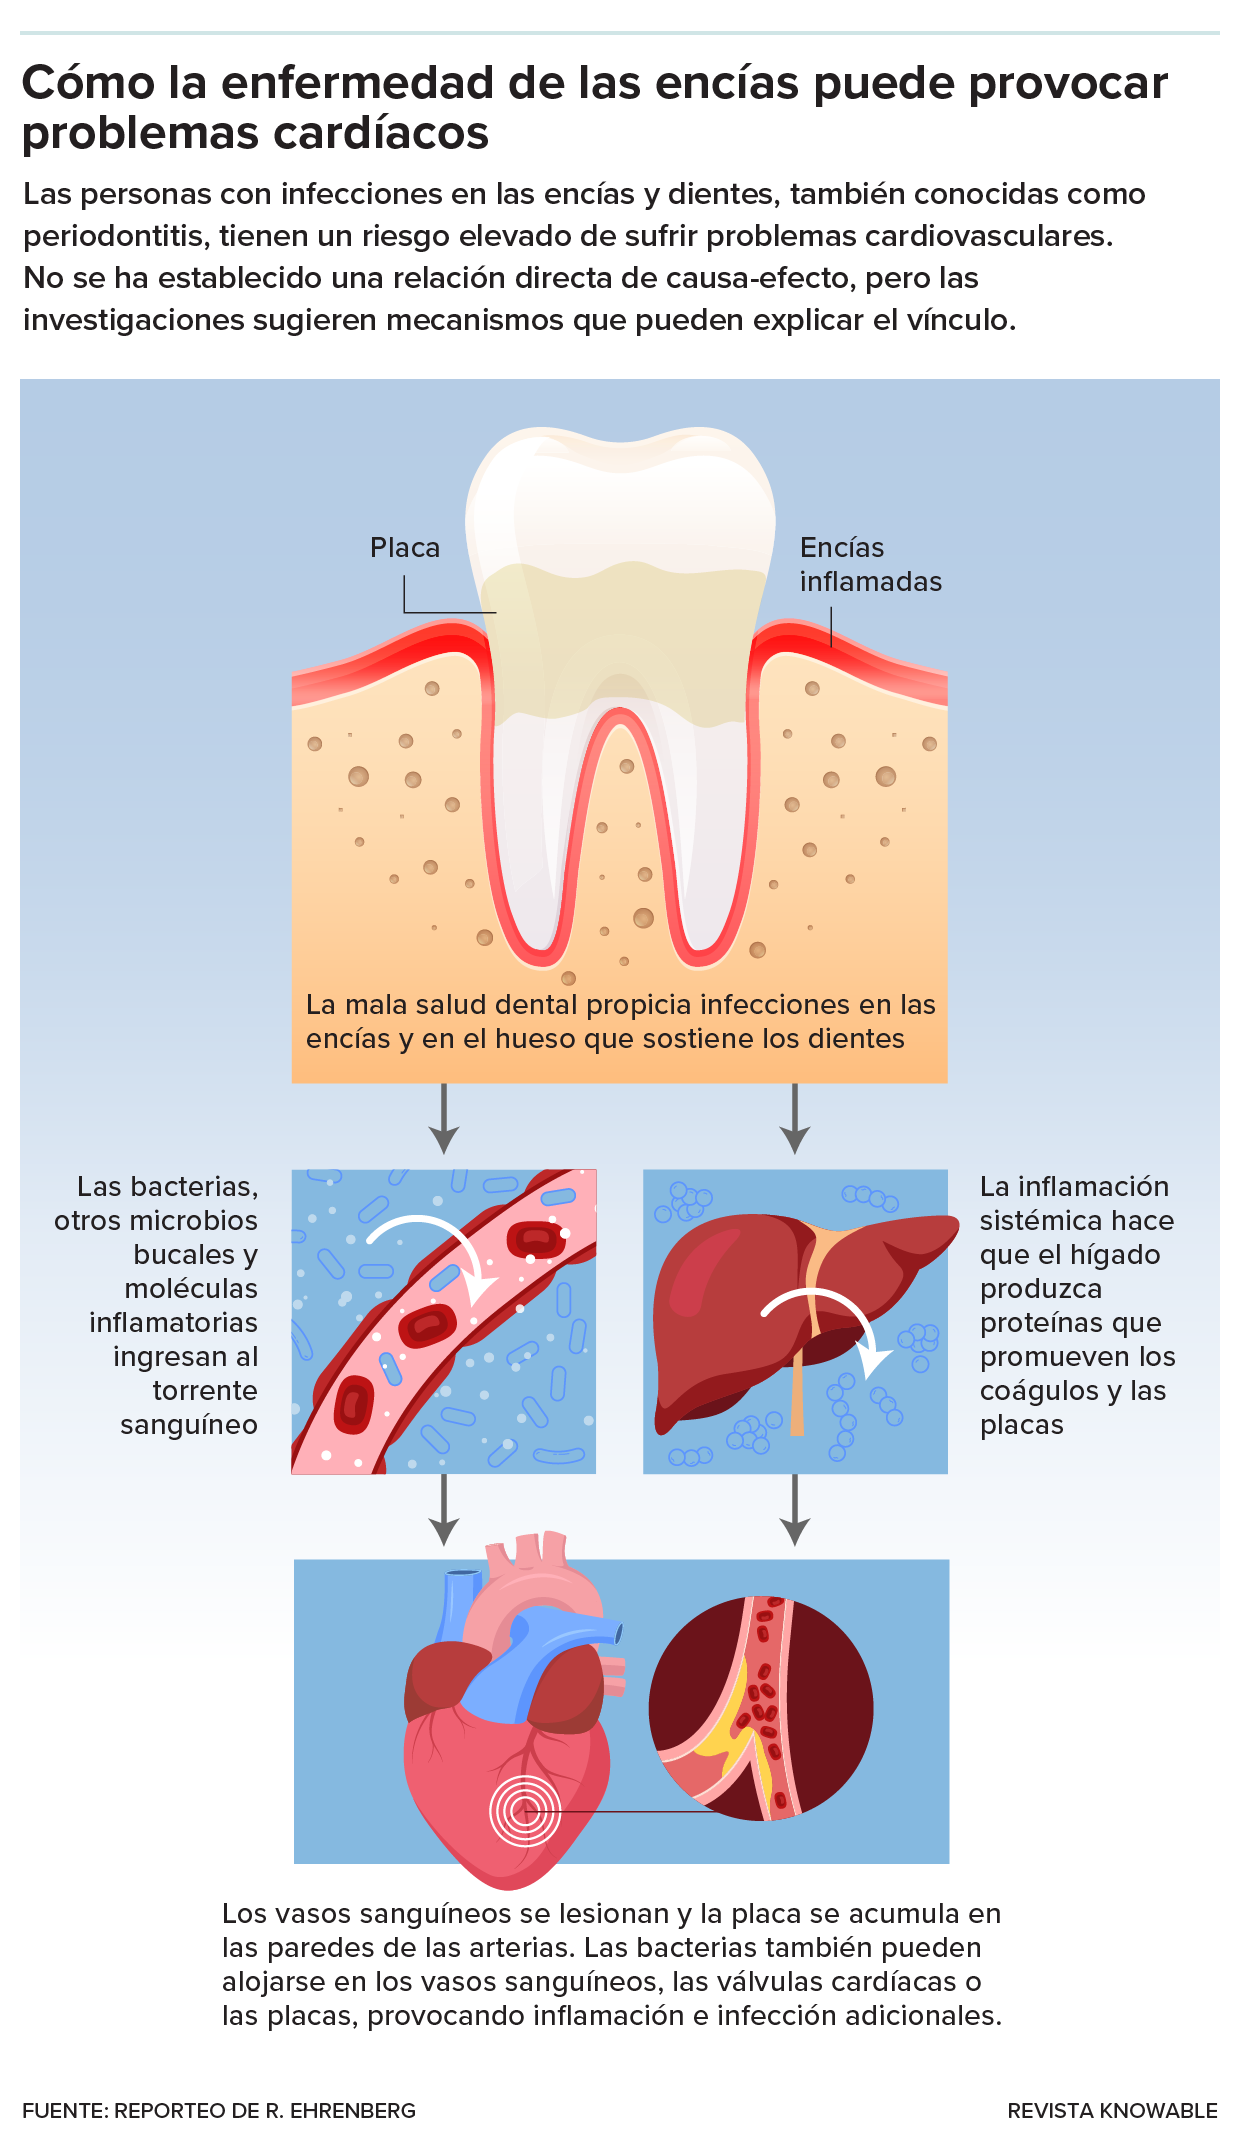 El gráfico muestra cómo la inflamación crónica en la boca y las bacterias orales podrían provocar problemas cardiovasculares.